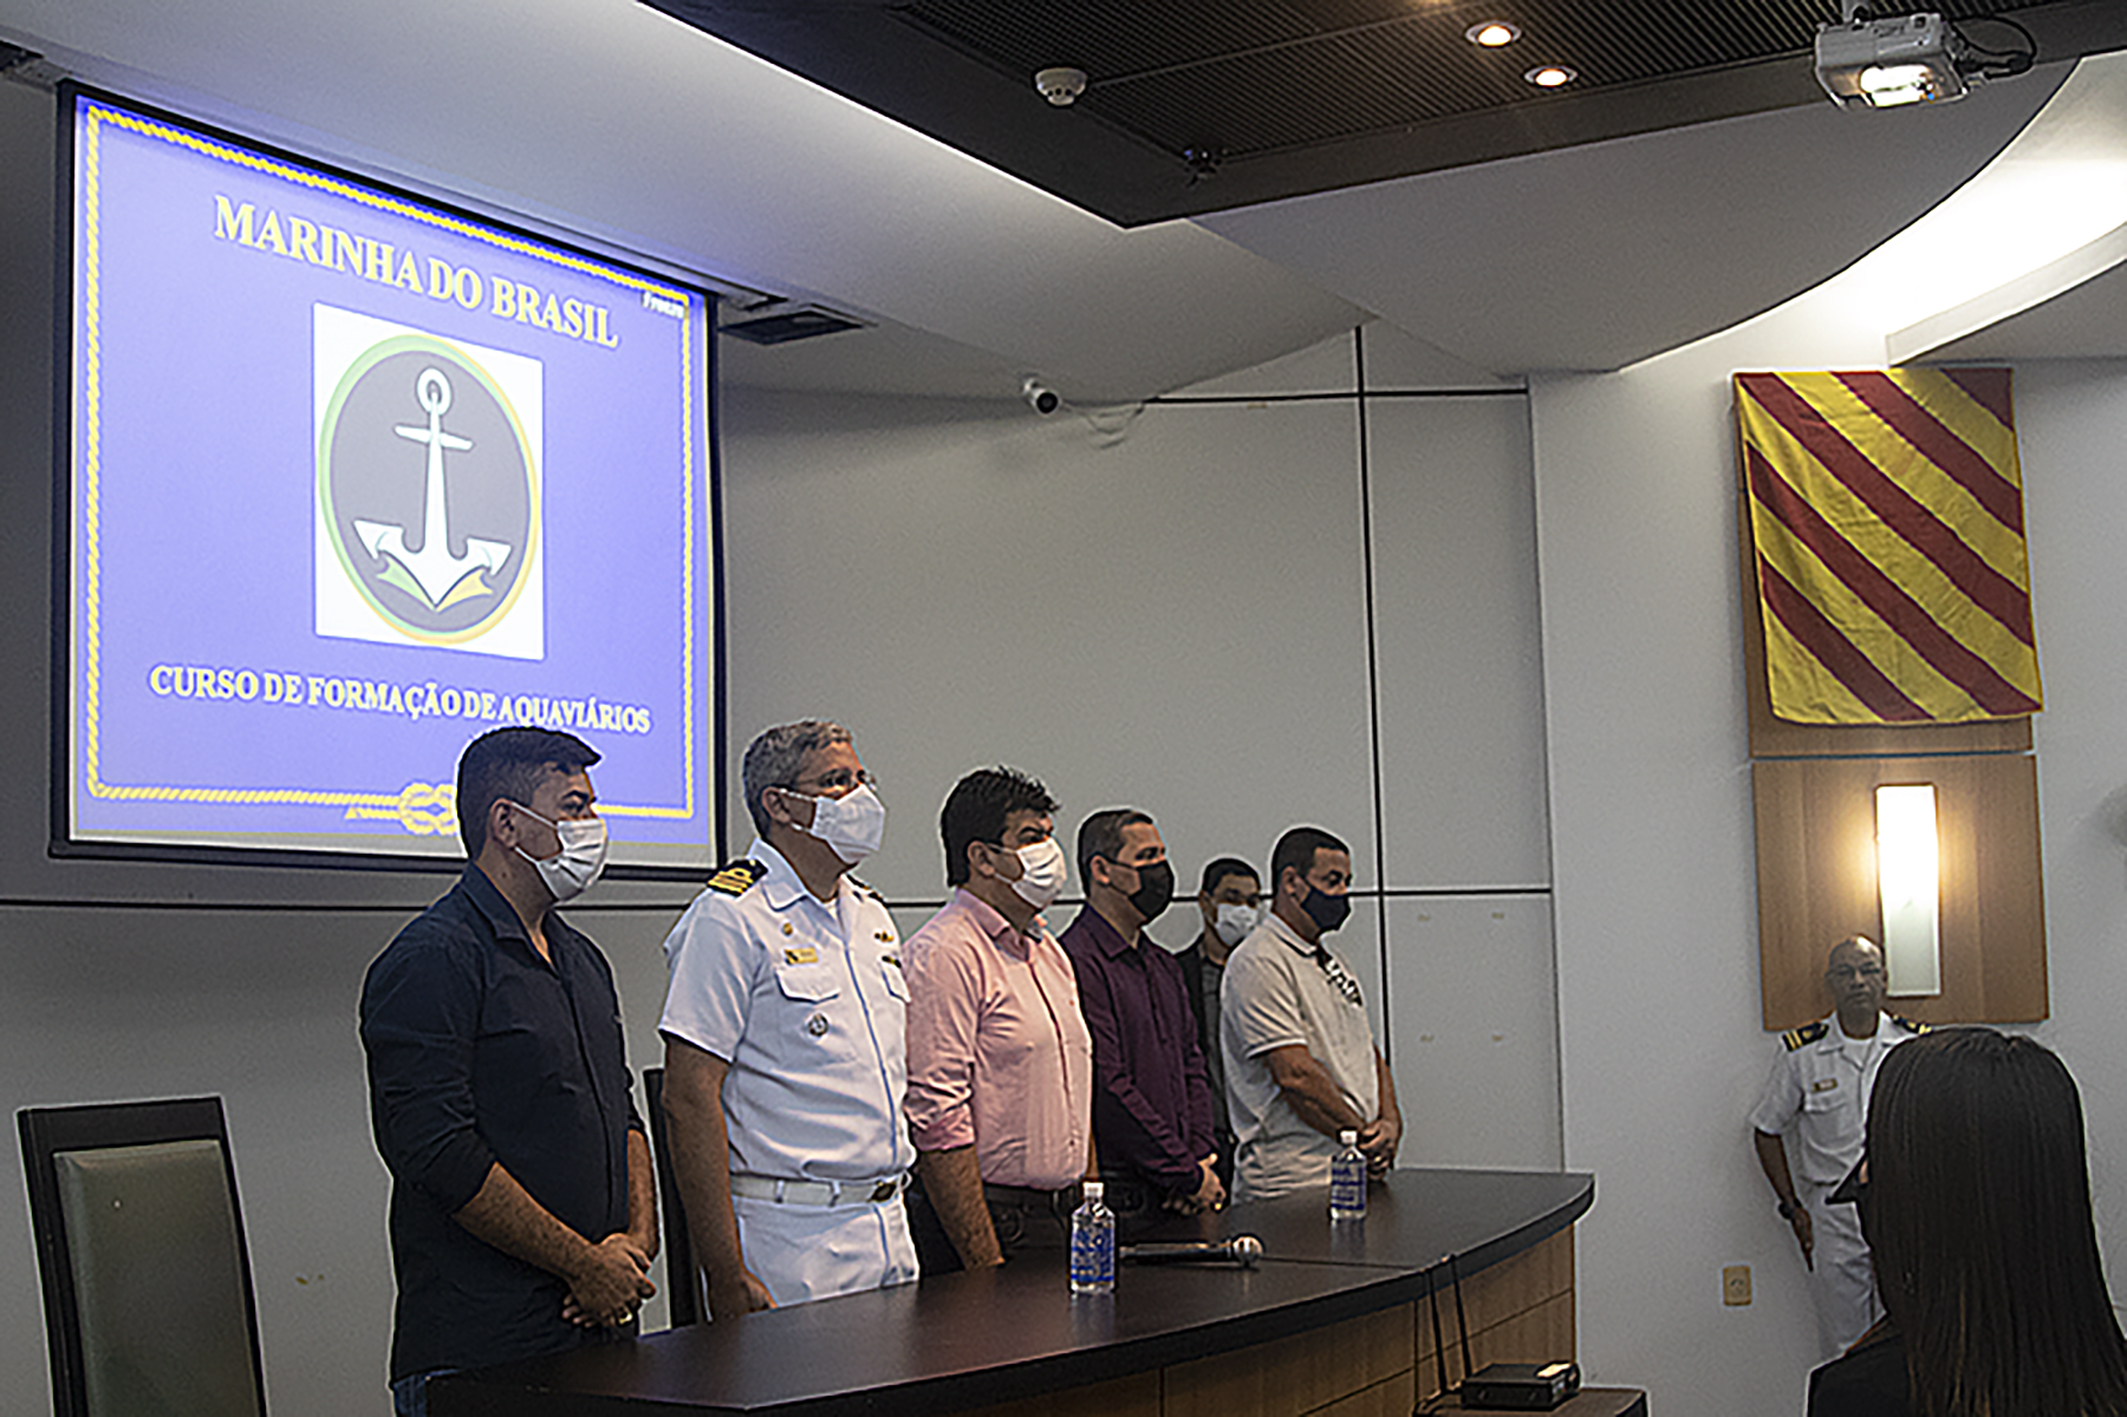 O curso foi oferecido, gratuitamente, pela Marinha do Brasil